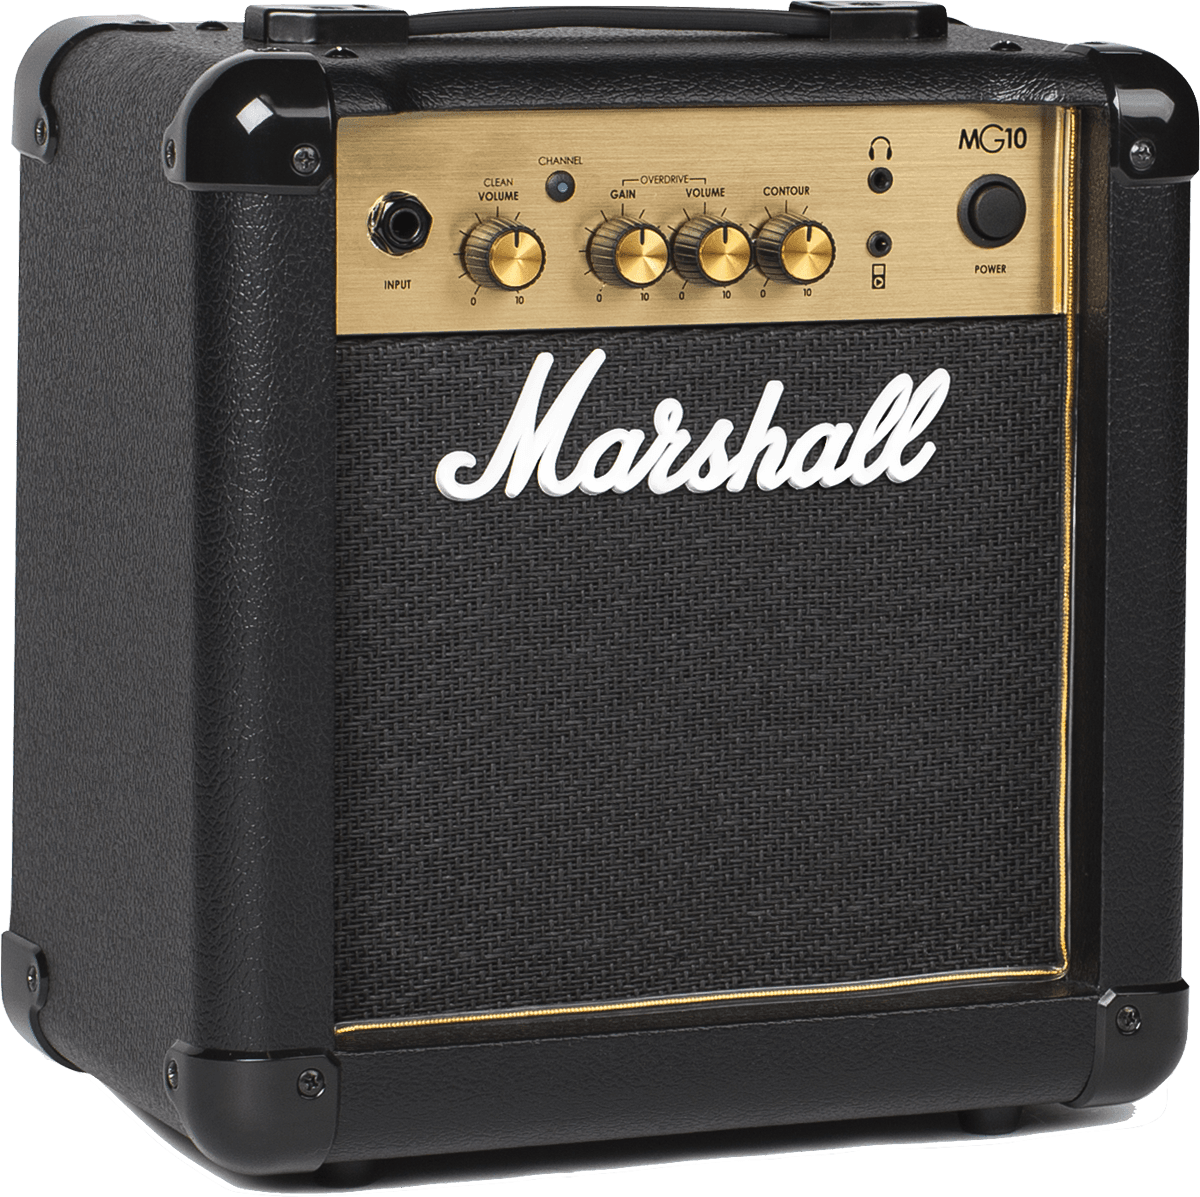 Eastone Tl70 + Marshall Mg10 +housse + Courroie + Cable + Mediators - 3 Tone Sunburst - Pack Guitare Électrique - Variation 6